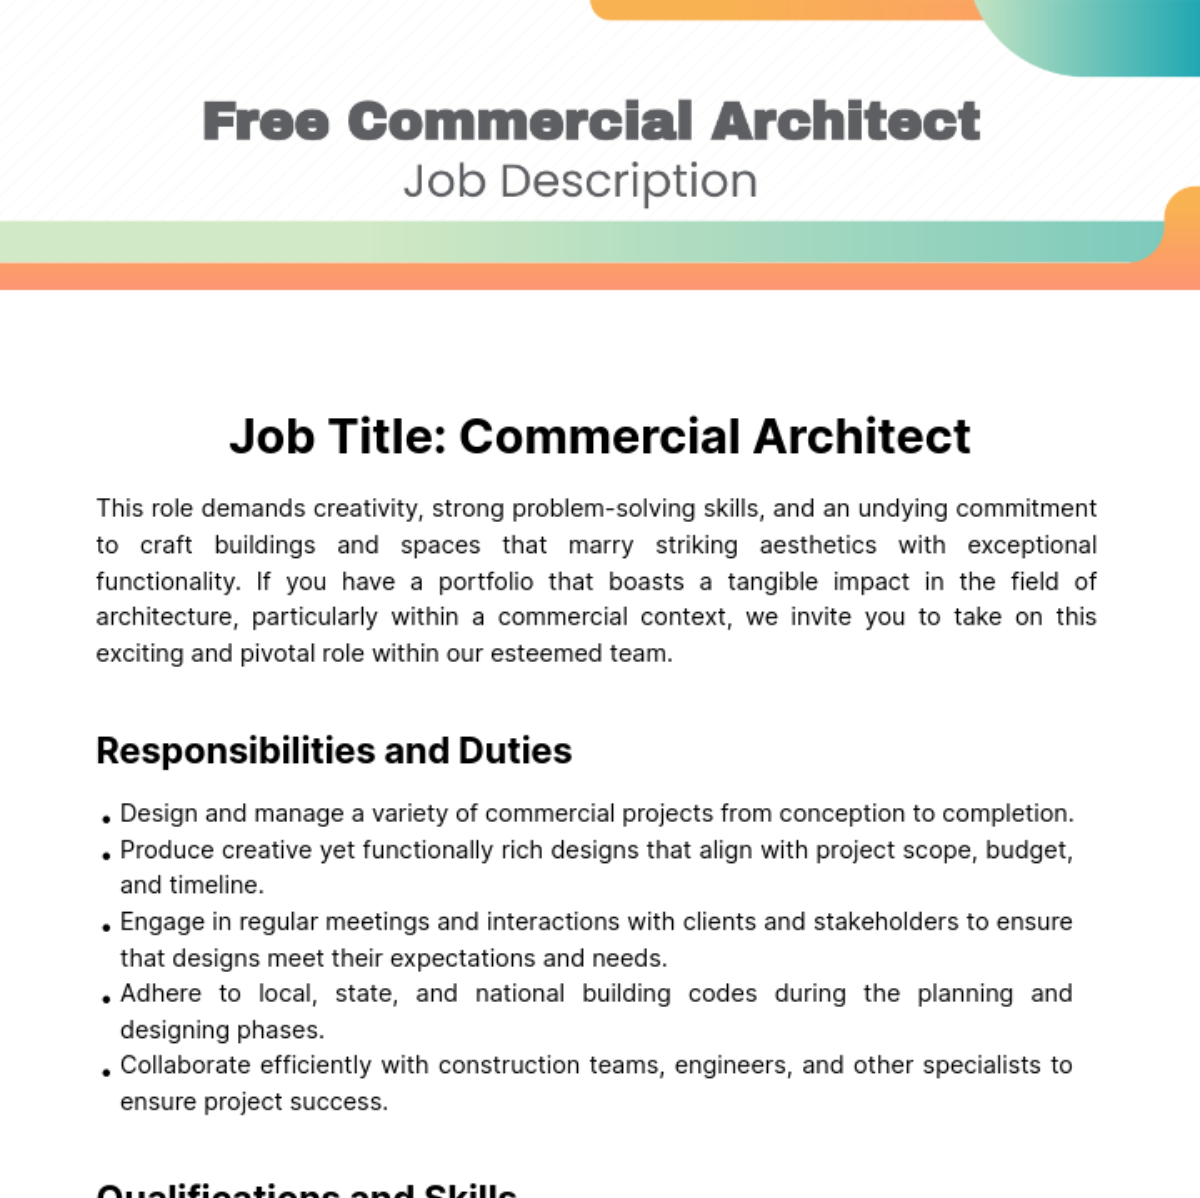 Commercial Architect Job Description Template